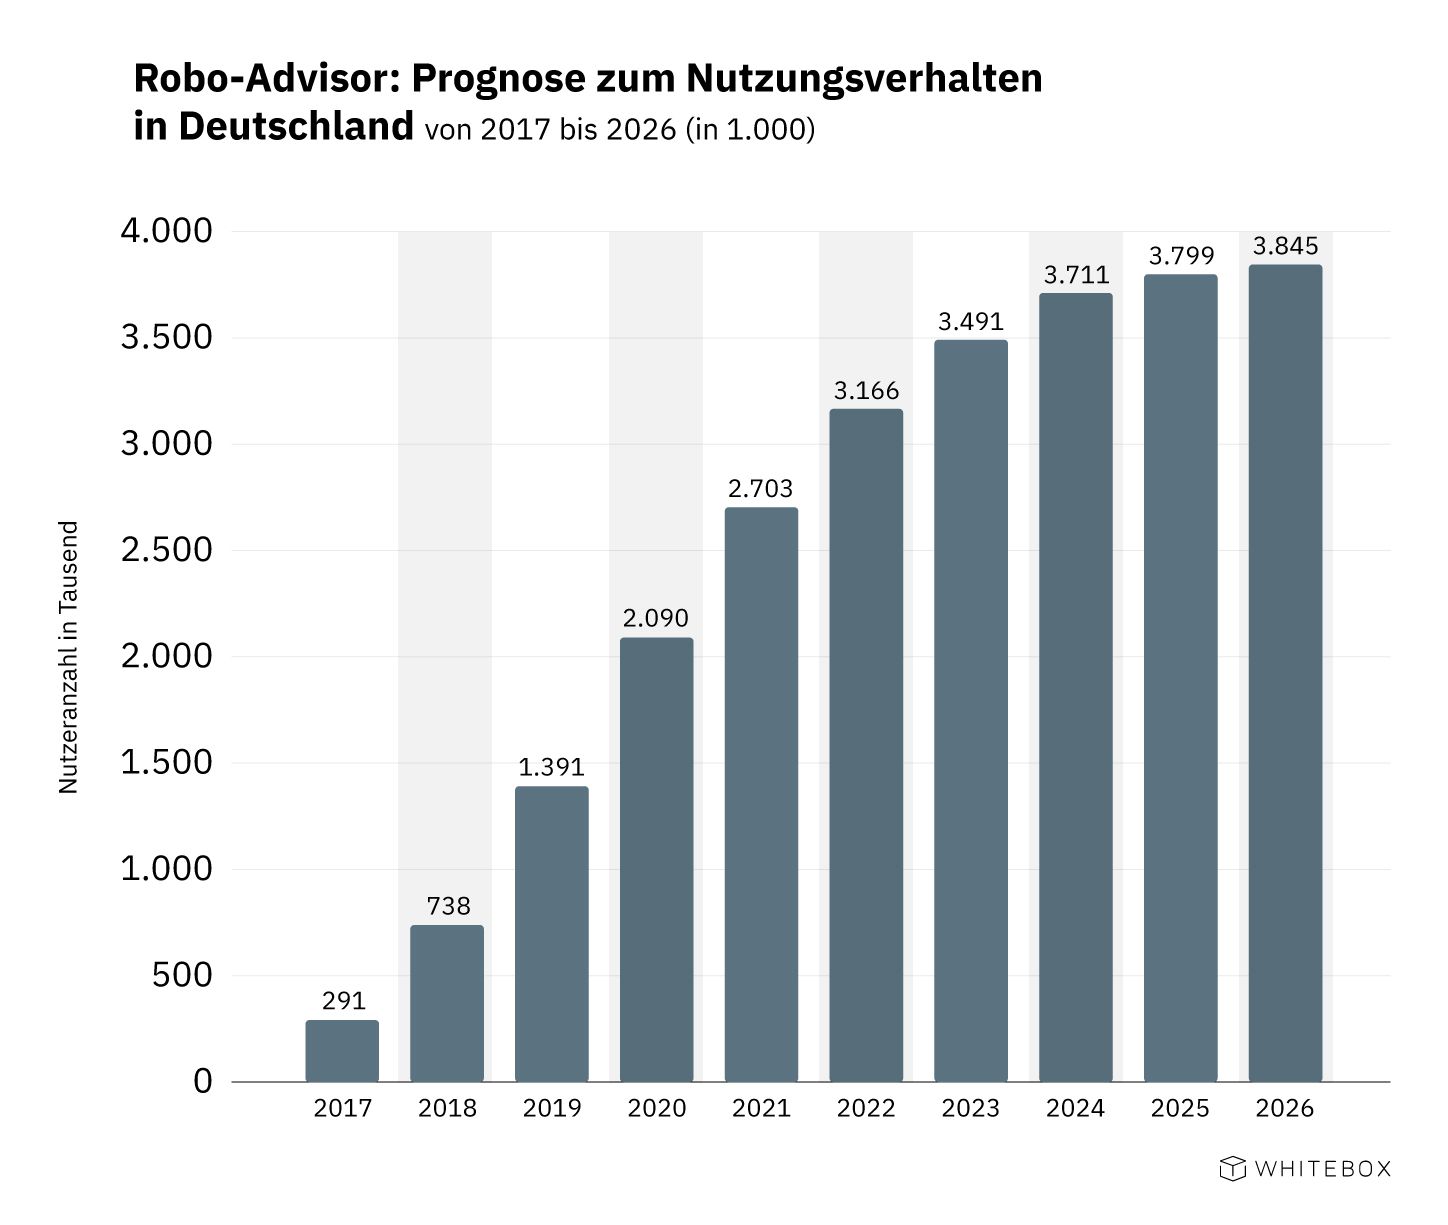 Robo Advisor: Prognose zum Nutzungsverhalten in Deutschland